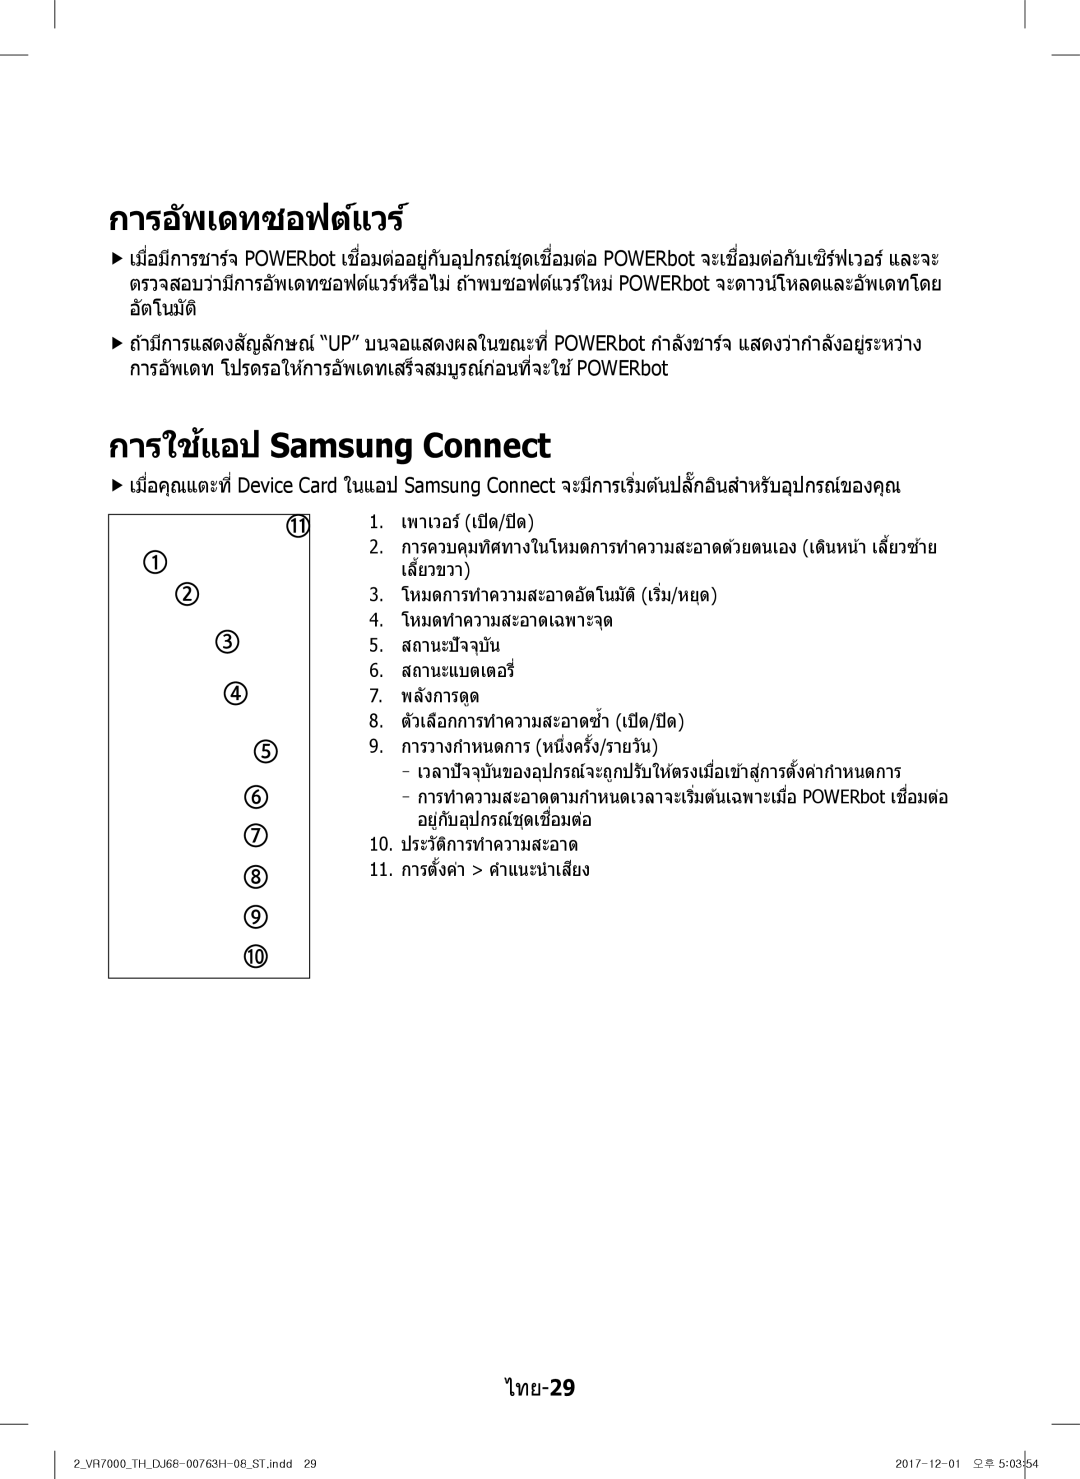 Samsung VR10M7030WG/ST, VR10M7020UW/ML, VR10M7020UW/TW manual การอัพเดทซอฟต์แวร์, การใชแอป้ Samsung Connect 